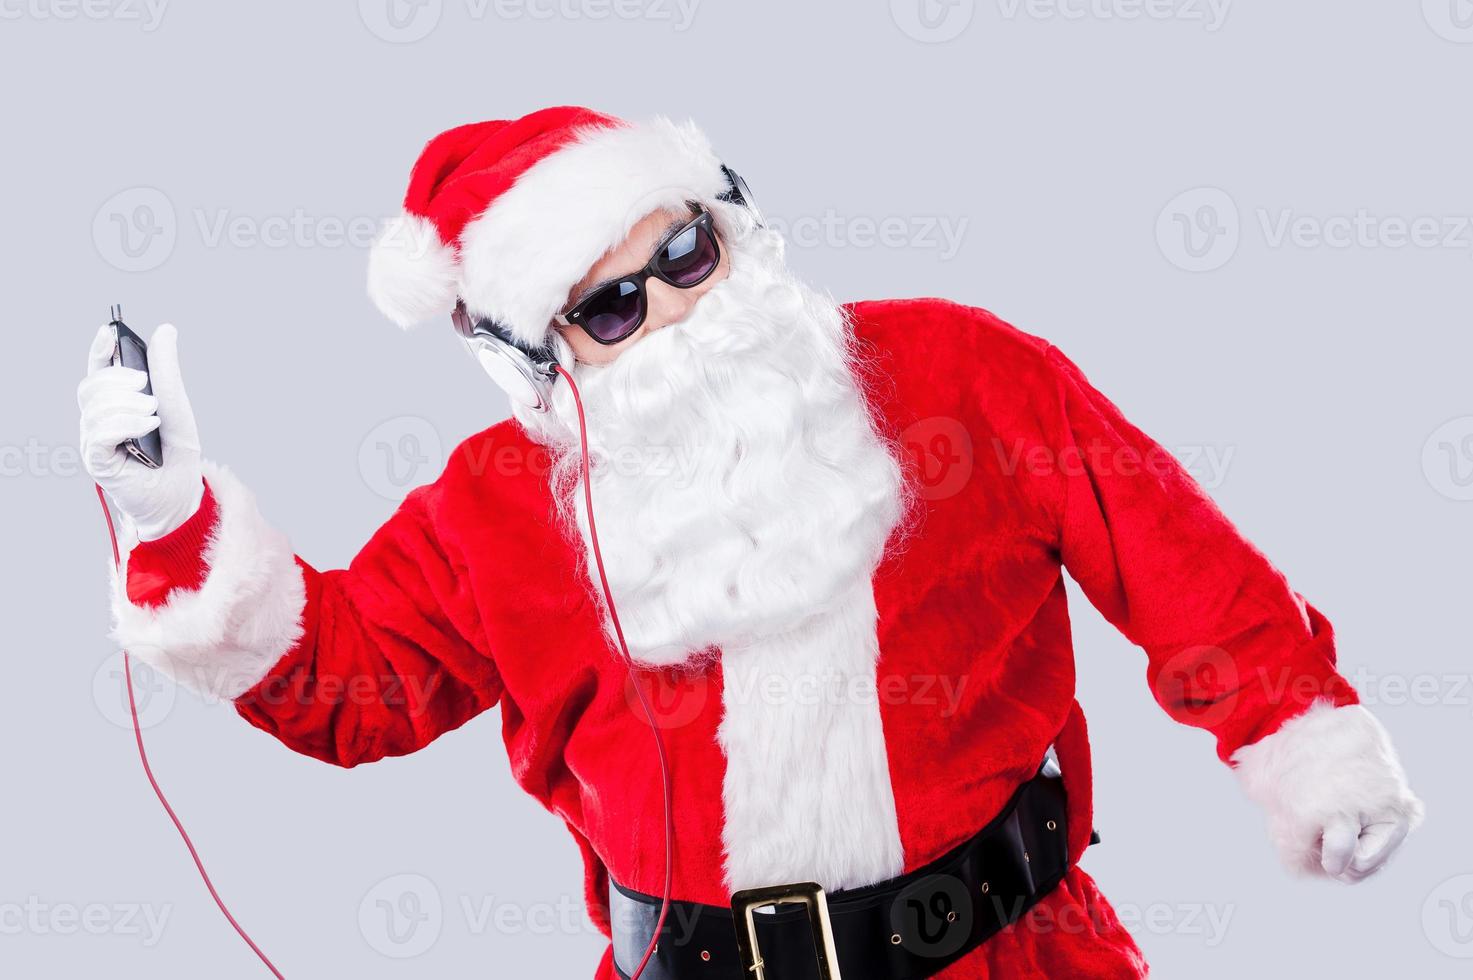 diversión navideña. santa claus con gafas de sol y auriculares escuchando un reproductor de mp3 y bailando mientras se enfrenta a un fondo gris foto